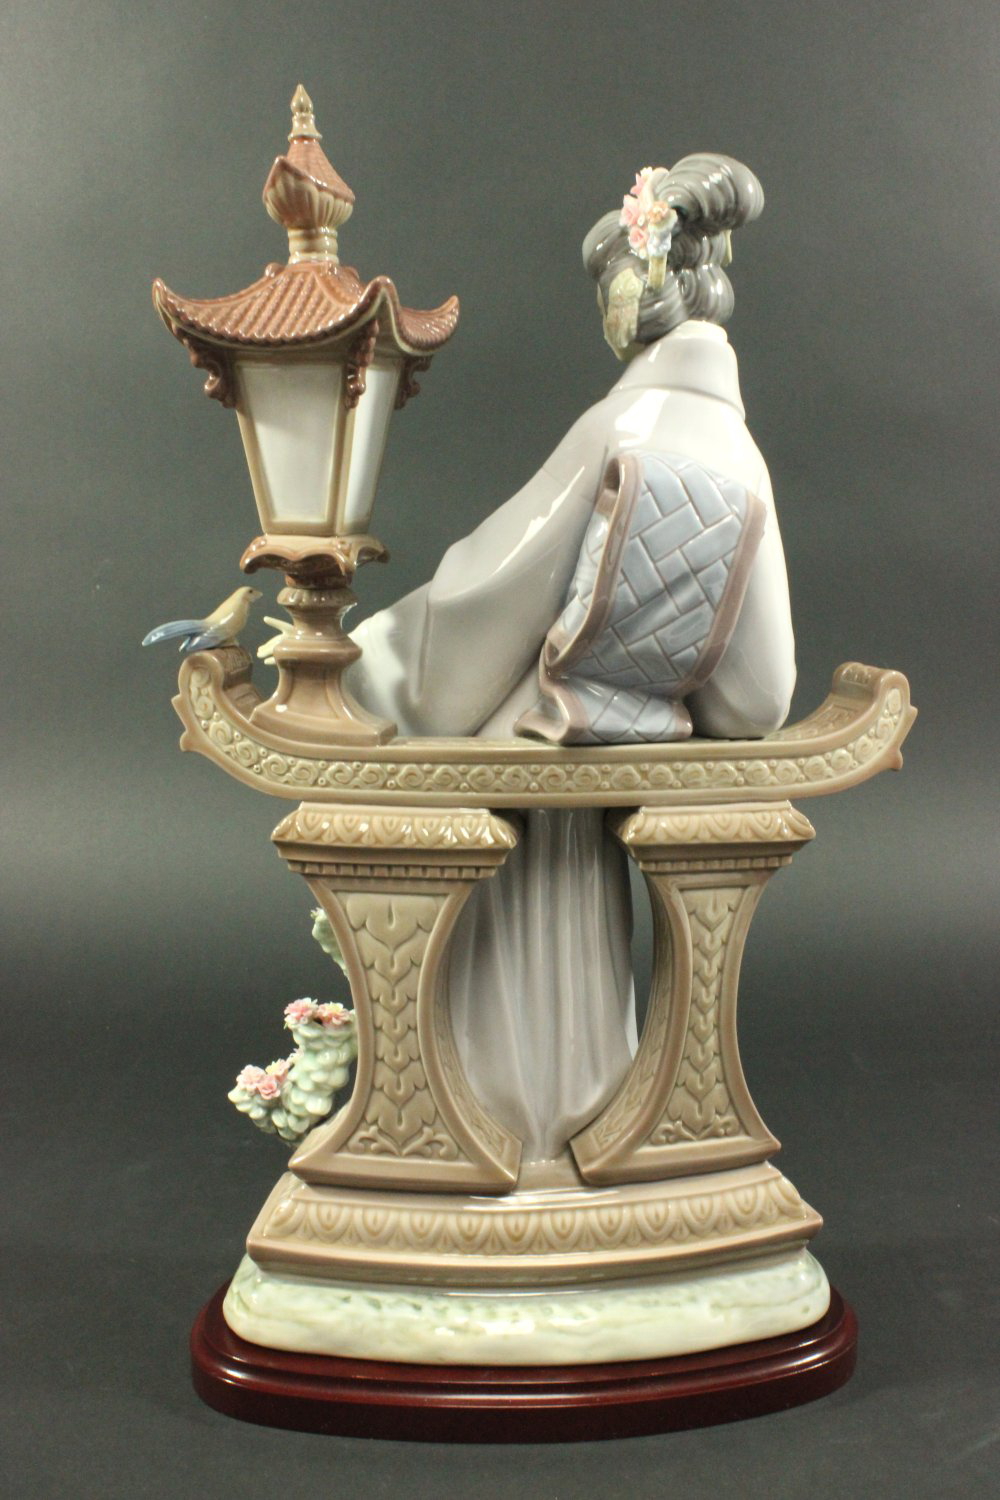 Lladro "Mariko" #1421 Porcelain Figurine - Image 5 of 6